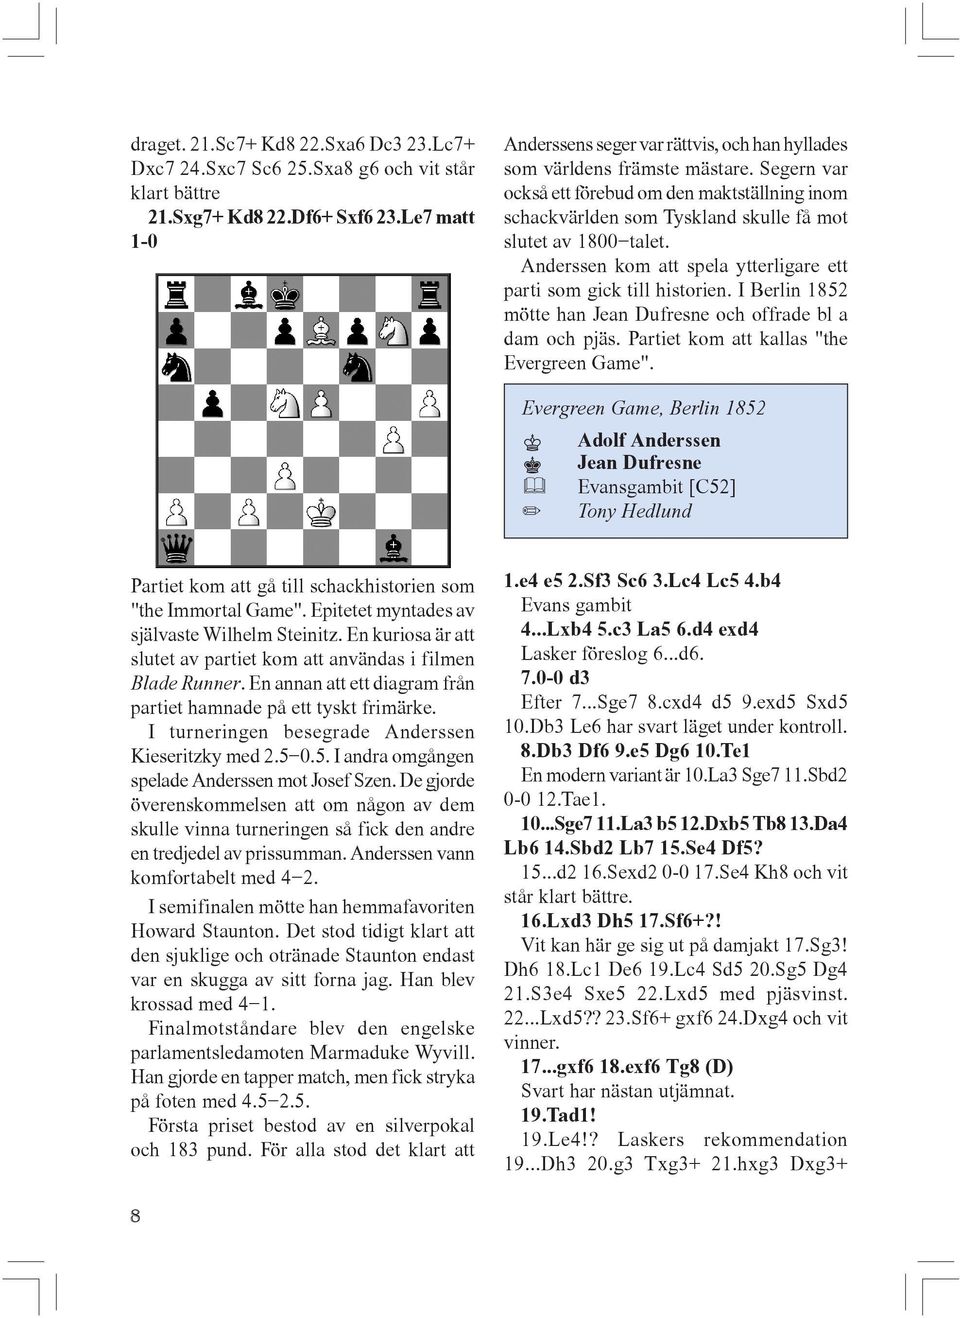 Segern var också ett förebud om den maktställning inom schackvärlden som Tyskland skulle få mot slutet av 1800-talet. Anderssen kom att spela ytterligare ett parti som gick till historien.